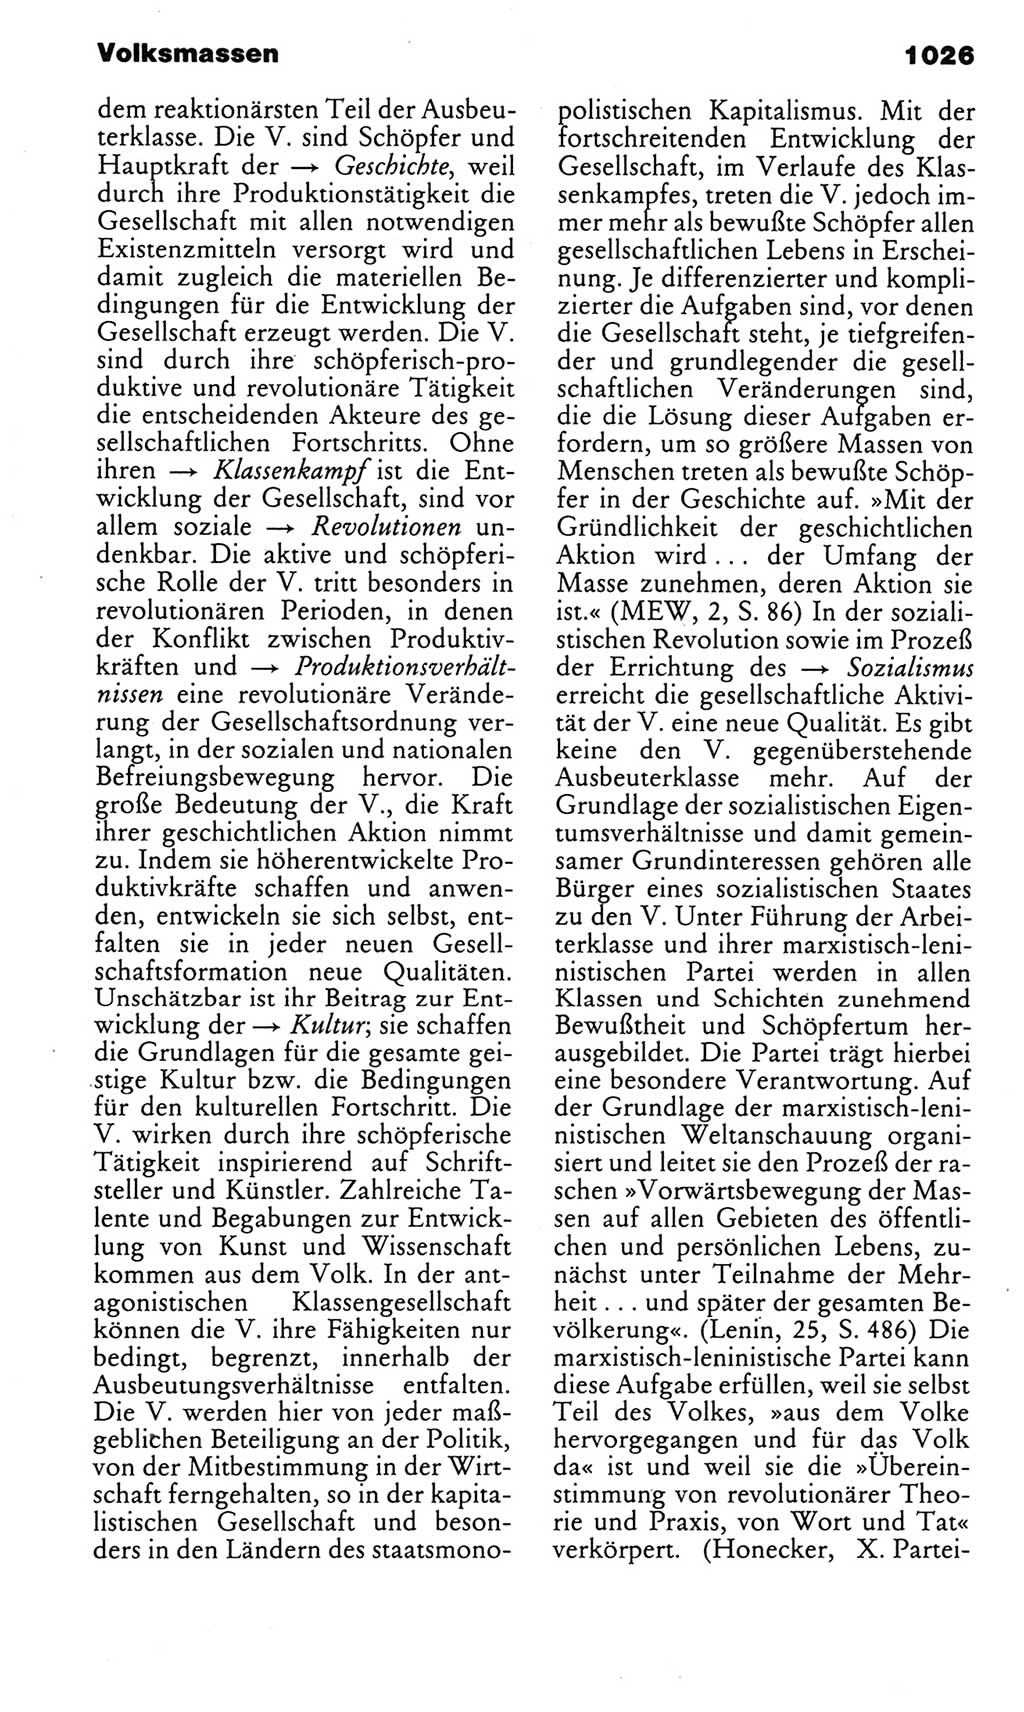 Kleines politisches Wörterbuch [Deutsche Demokratische Republik (DDR)] 1983, Seite 1026 (Kl. pol. Wb. DDR 1983, S. 1026)